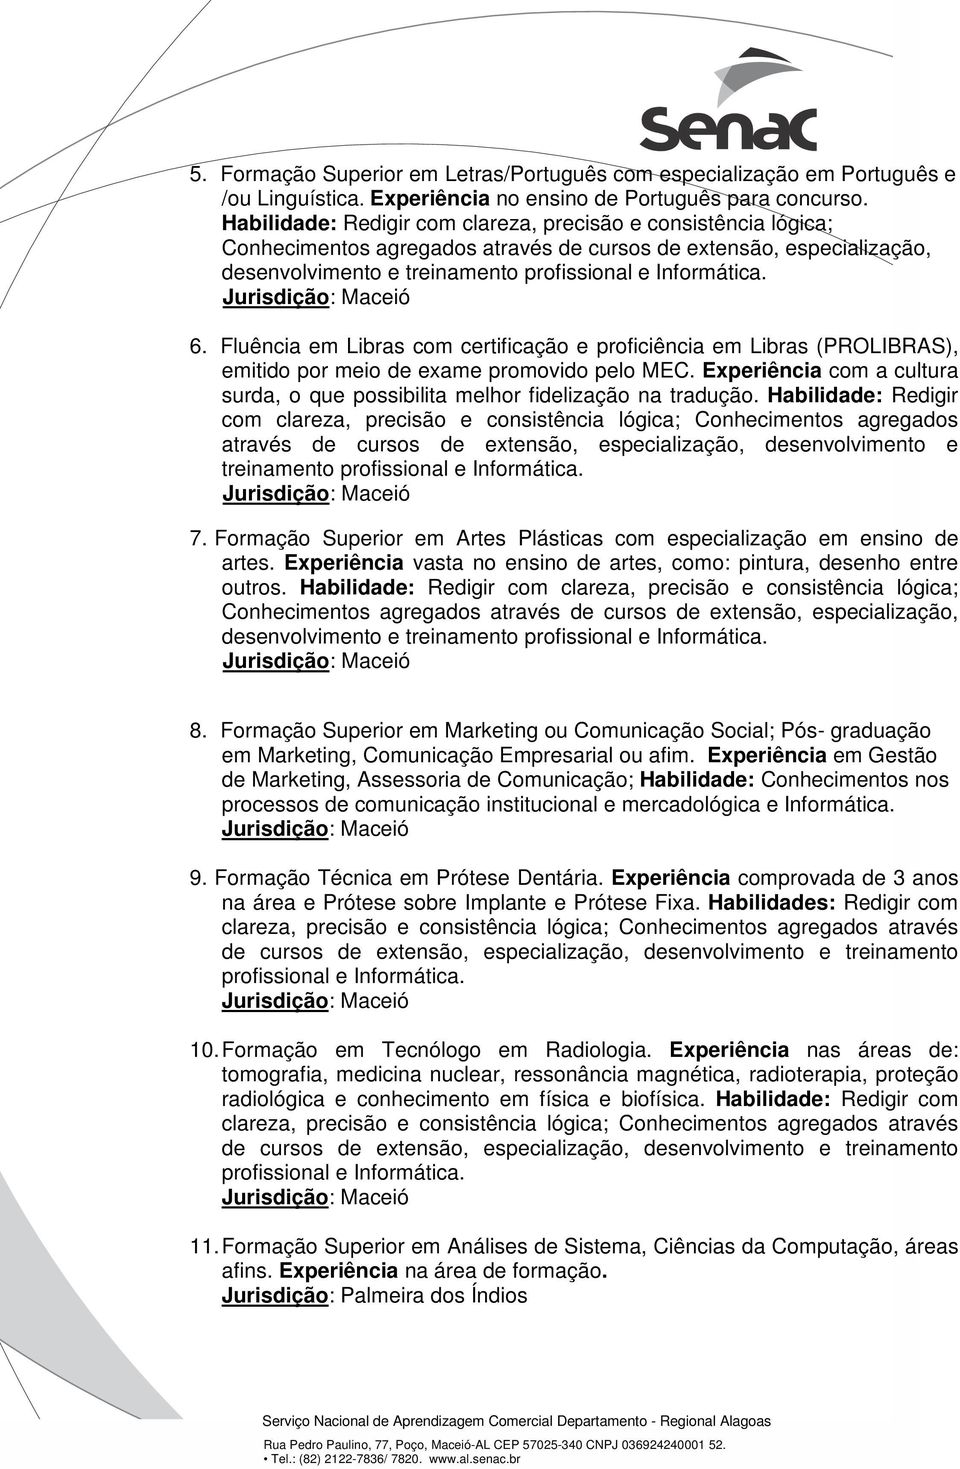 Fluência em Libras com certificação e proficiência em Libras (PROLIBRAS), emitido por meio de exame promovido pelo MEC.